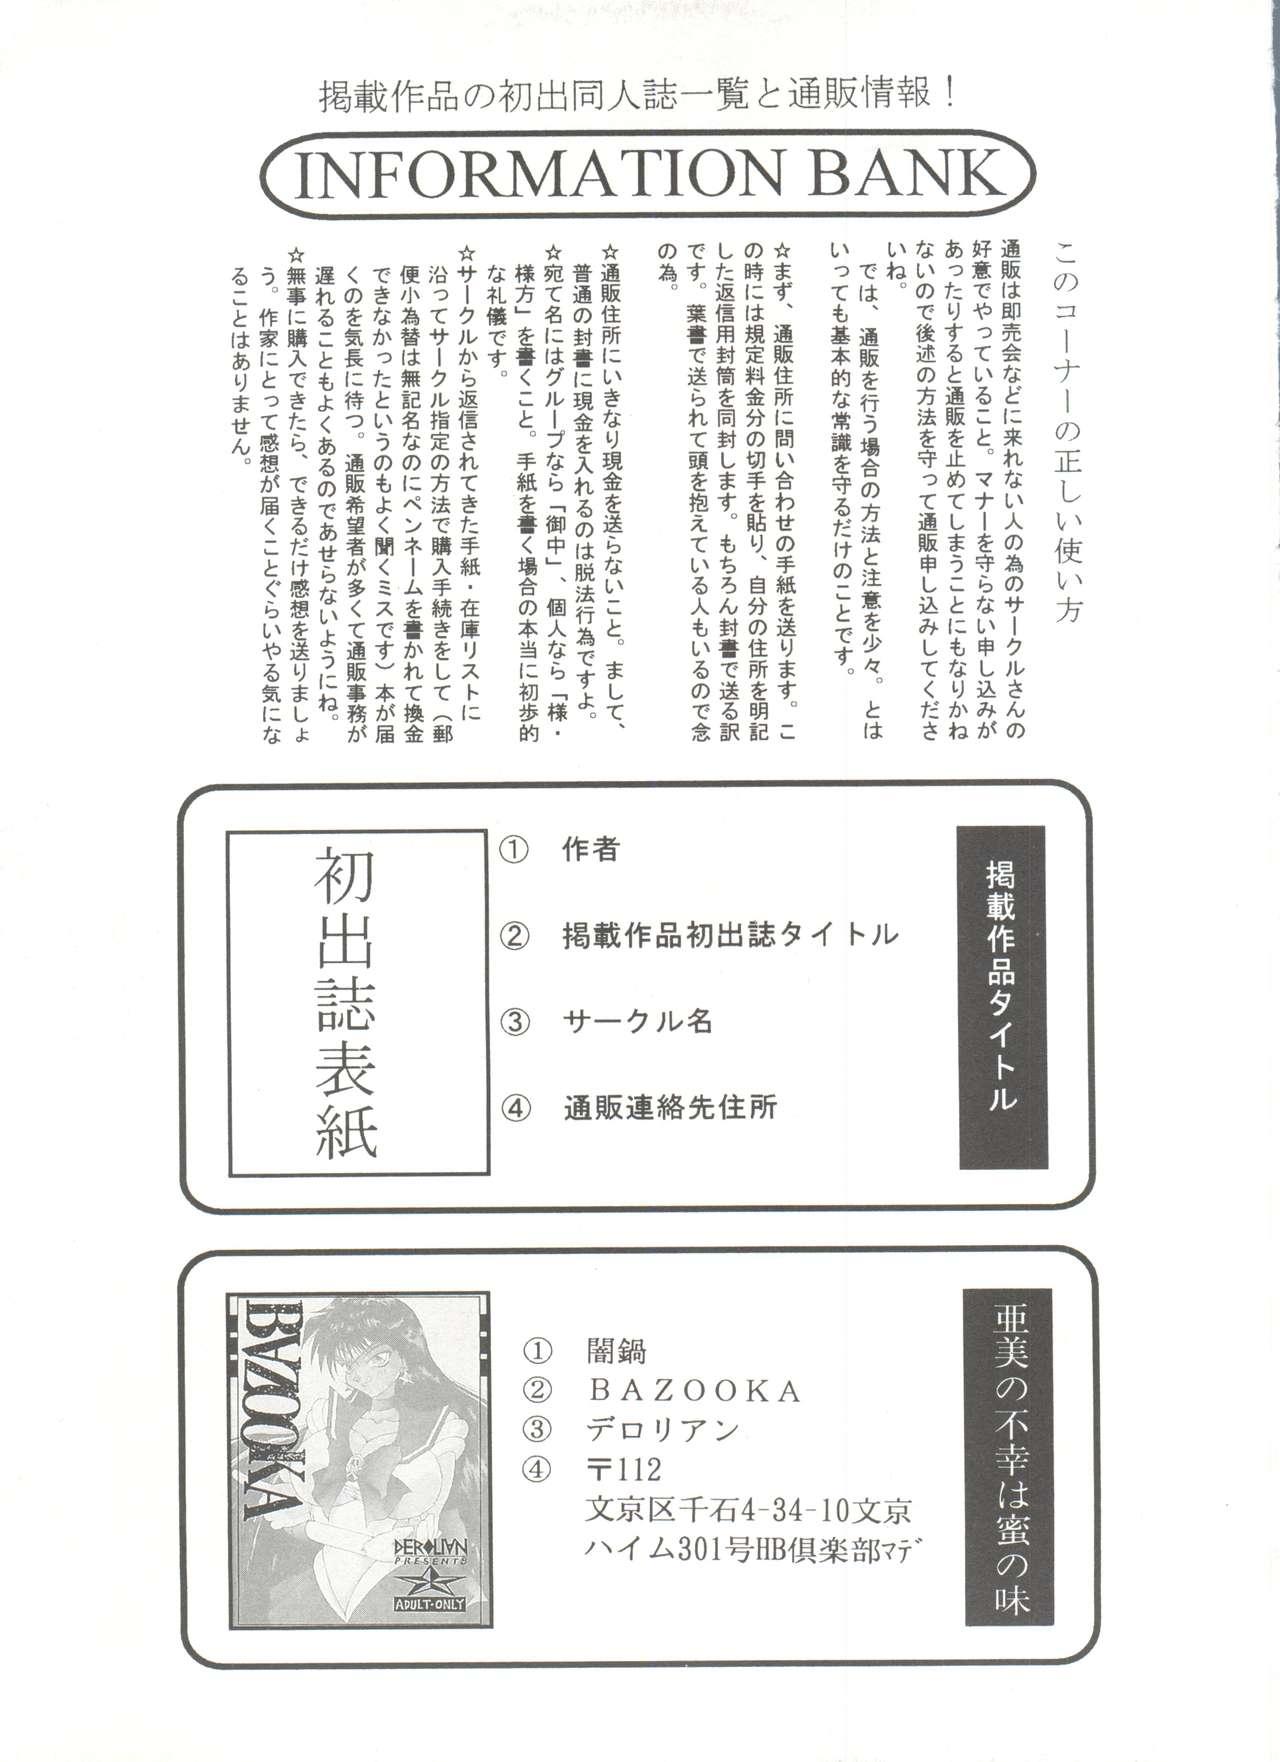 Bishoujo Doujinshi Anthology 7 - Moon Paradise 4 Tsuki no Rakuen 143